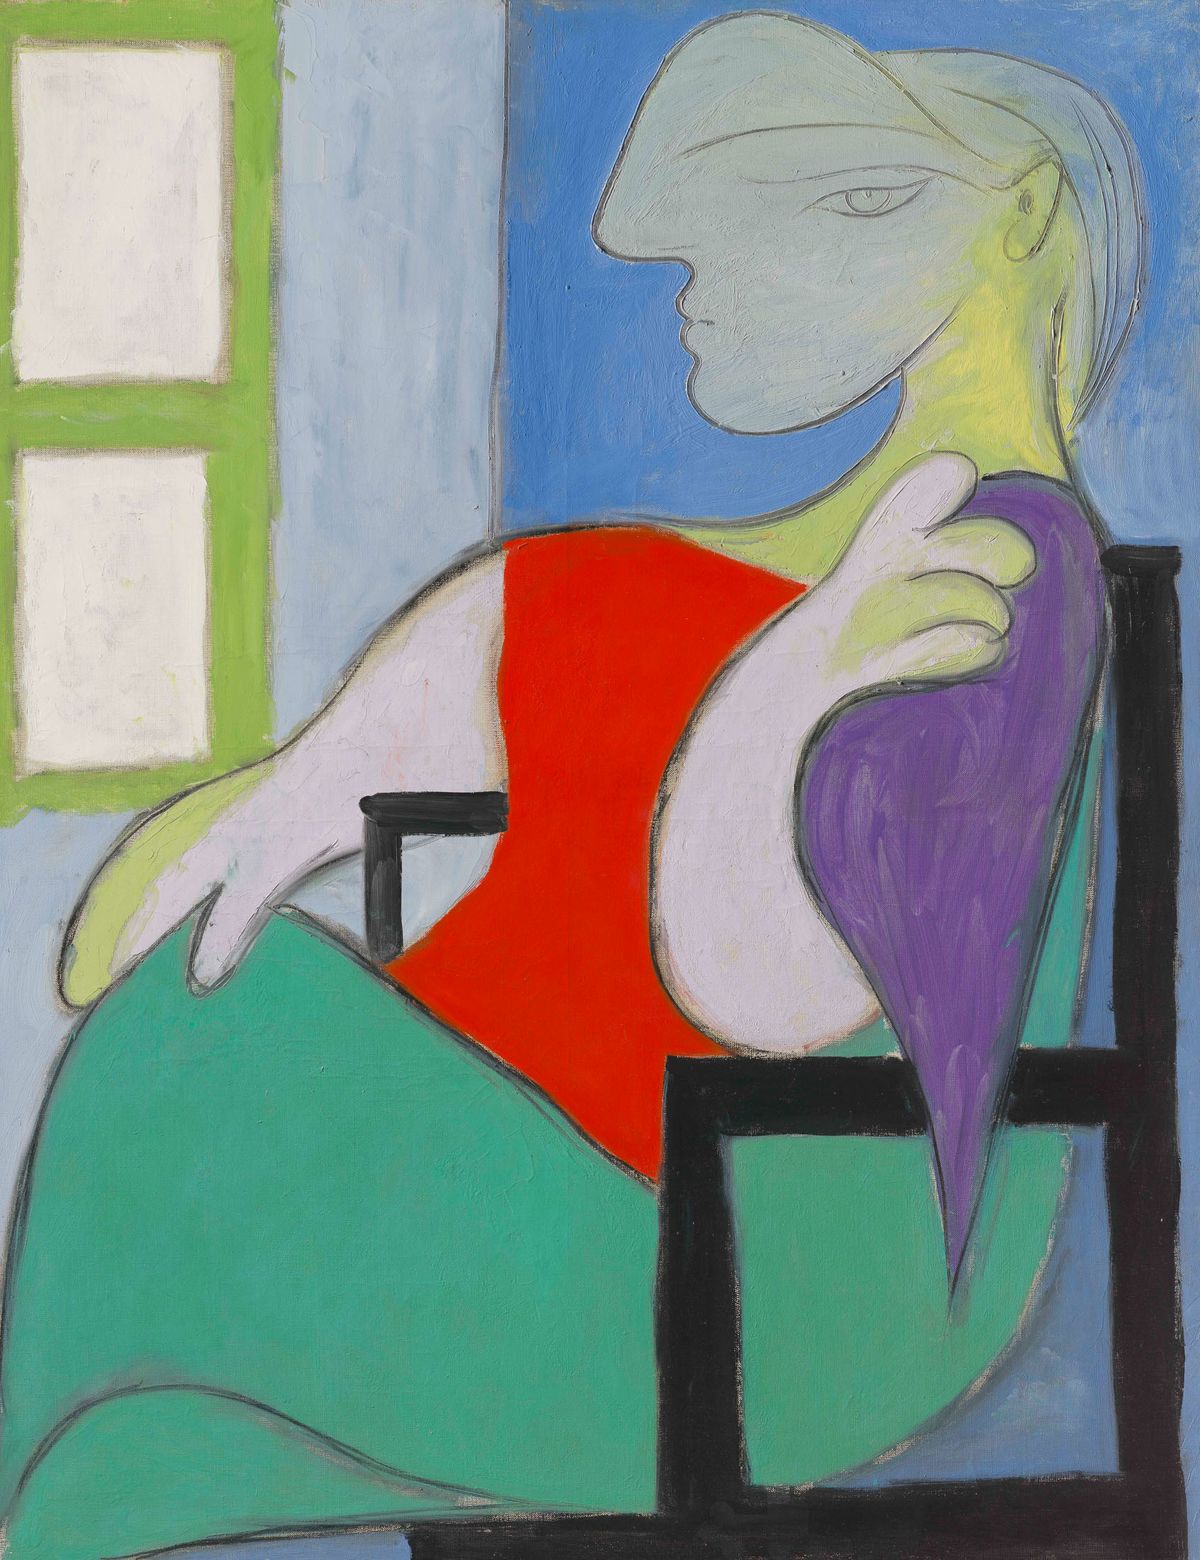 Pablo Picasso's Femme assise près d'une fenêtre (Marie-Thérèse), 1932